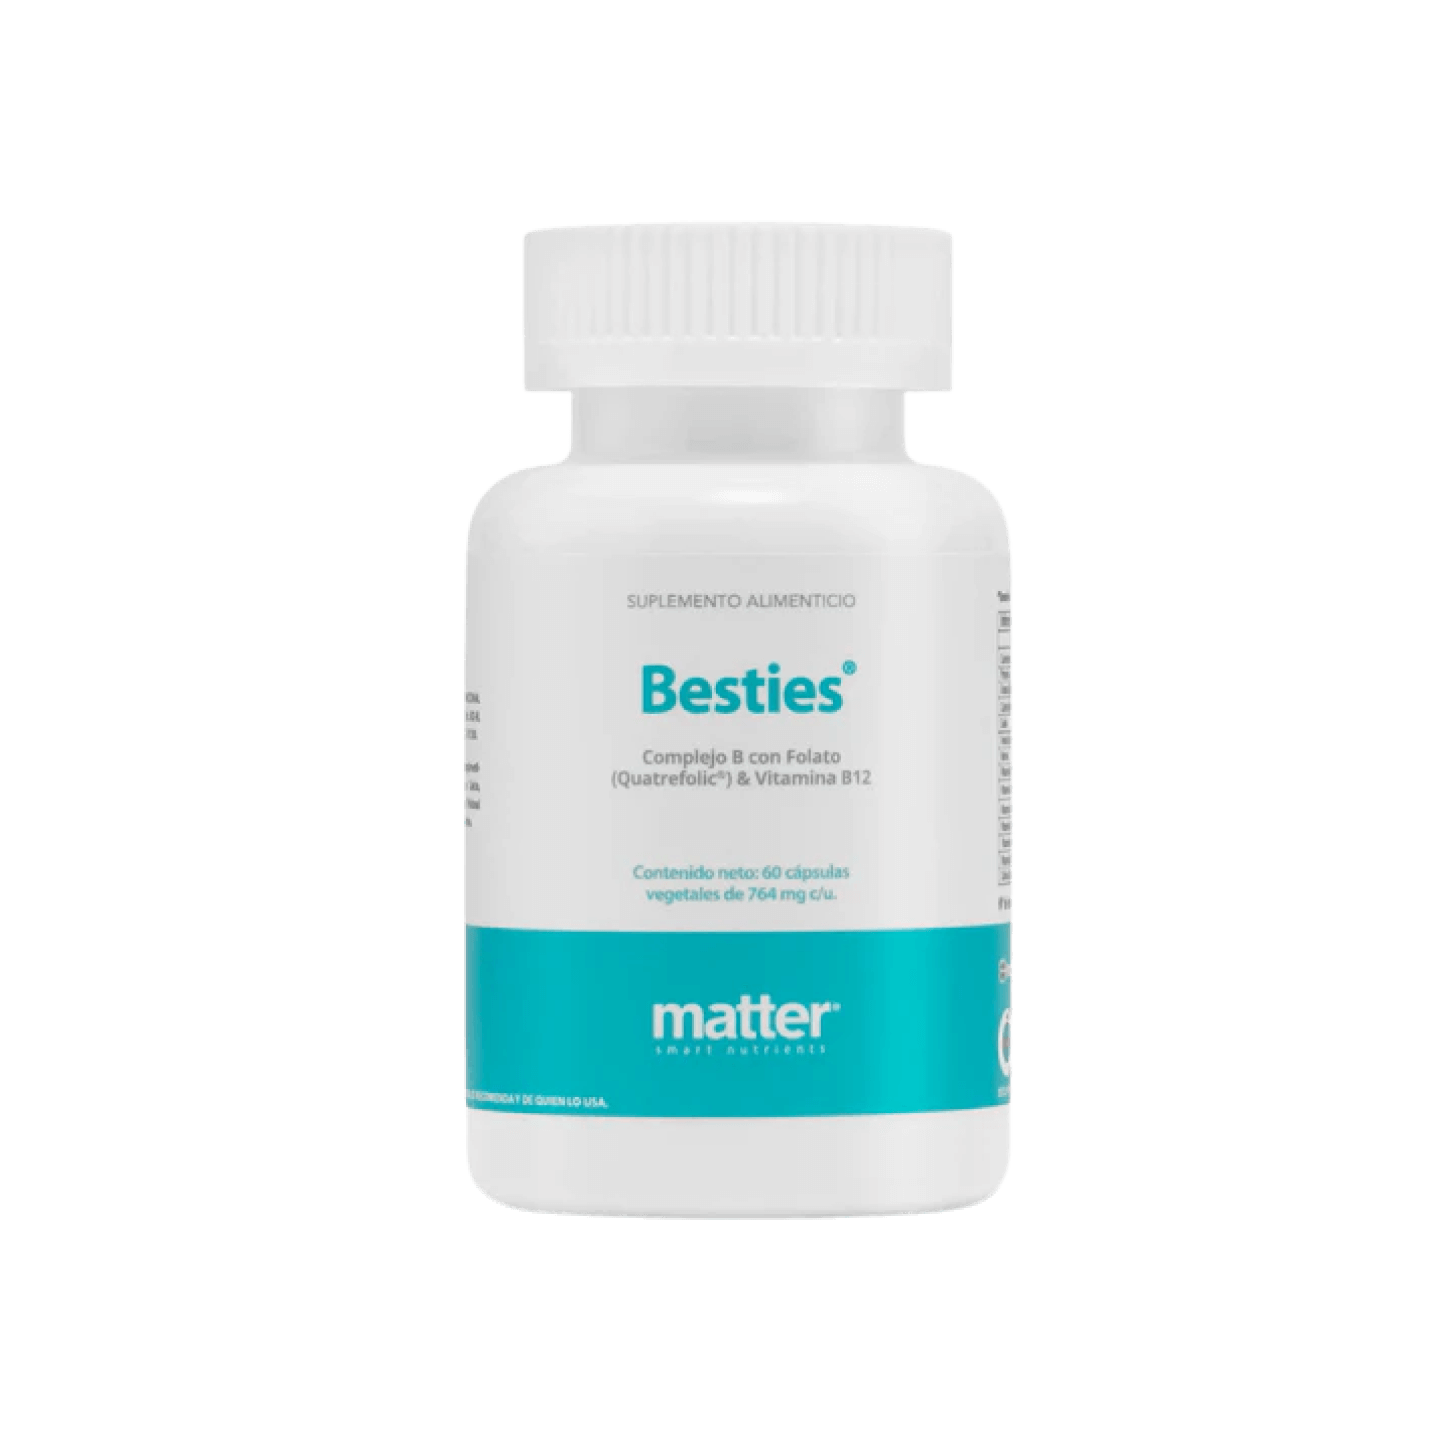 Besties | Complejo B con Folato (Quatrefolic®) & Vitamina B12